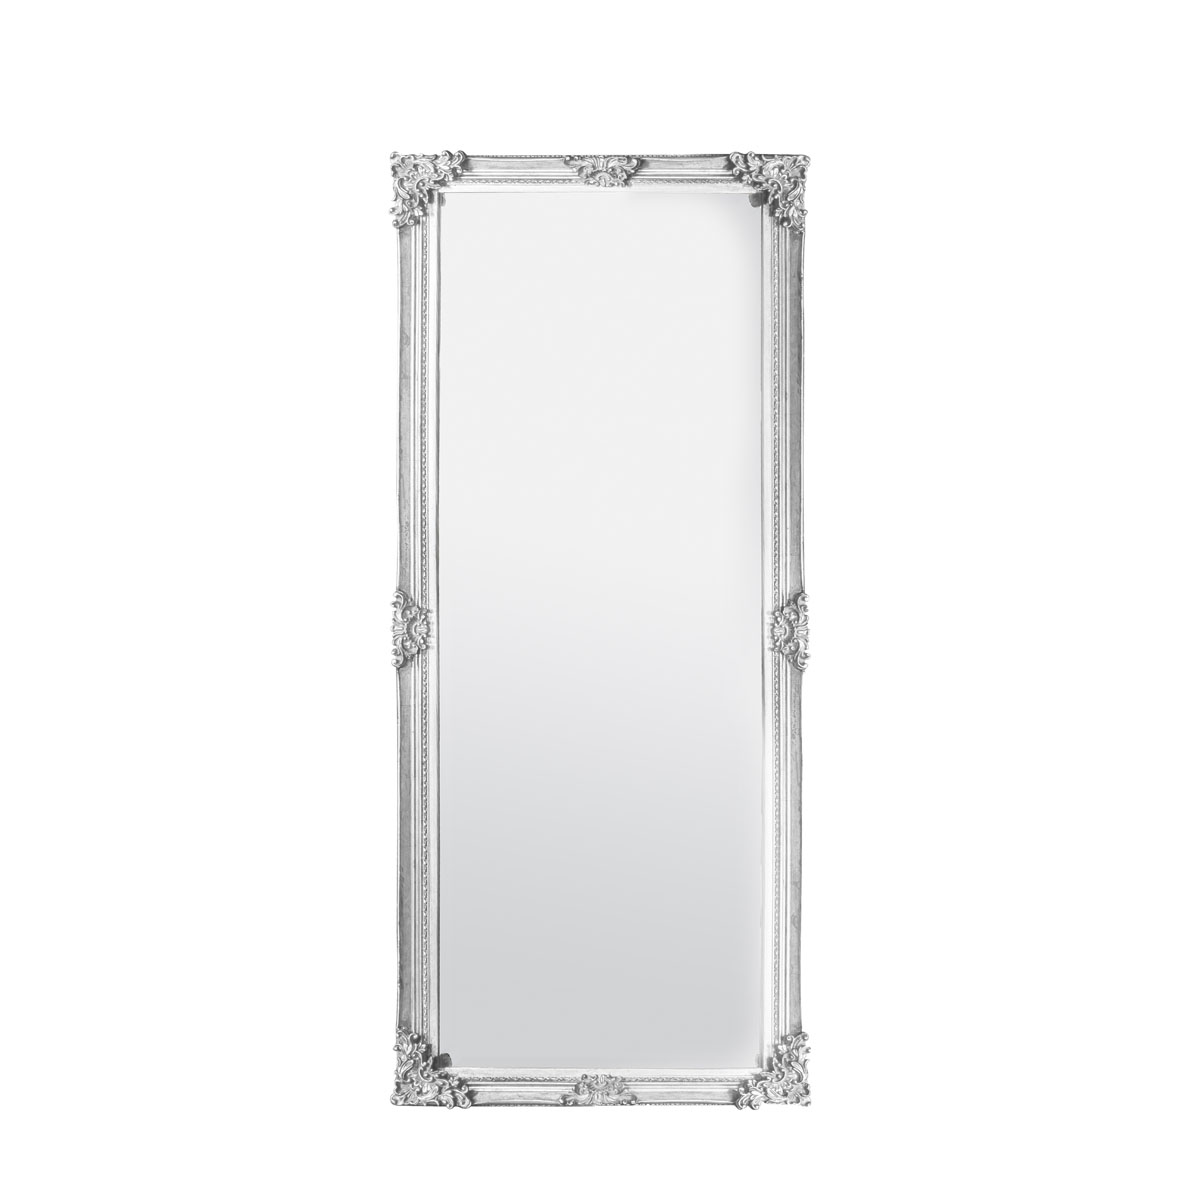 Fiennes Leaner Mirror Antique White 700x1600mm